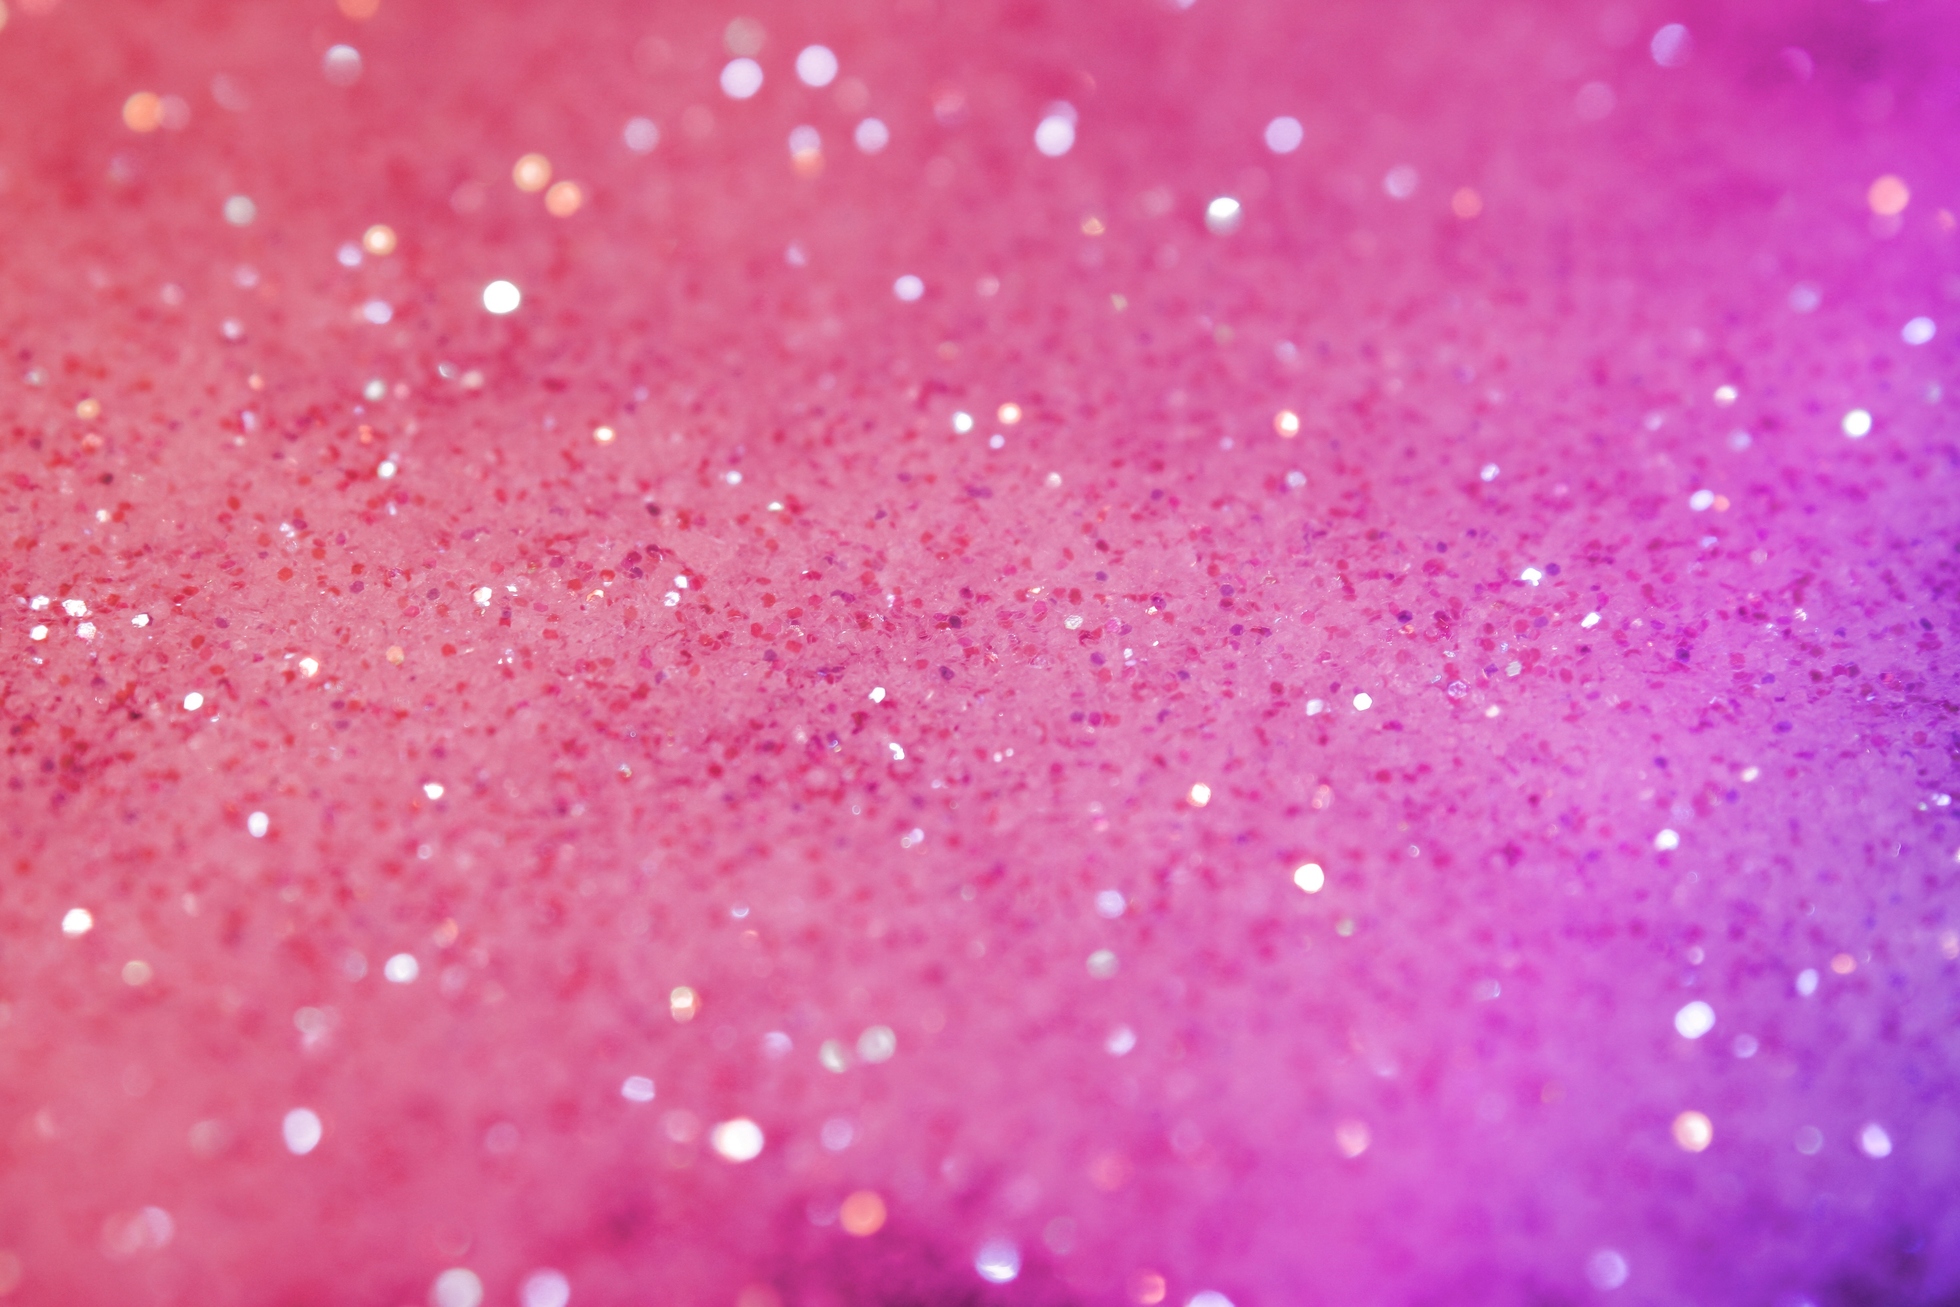 Desktop images of pink wallpaper backgrounds.